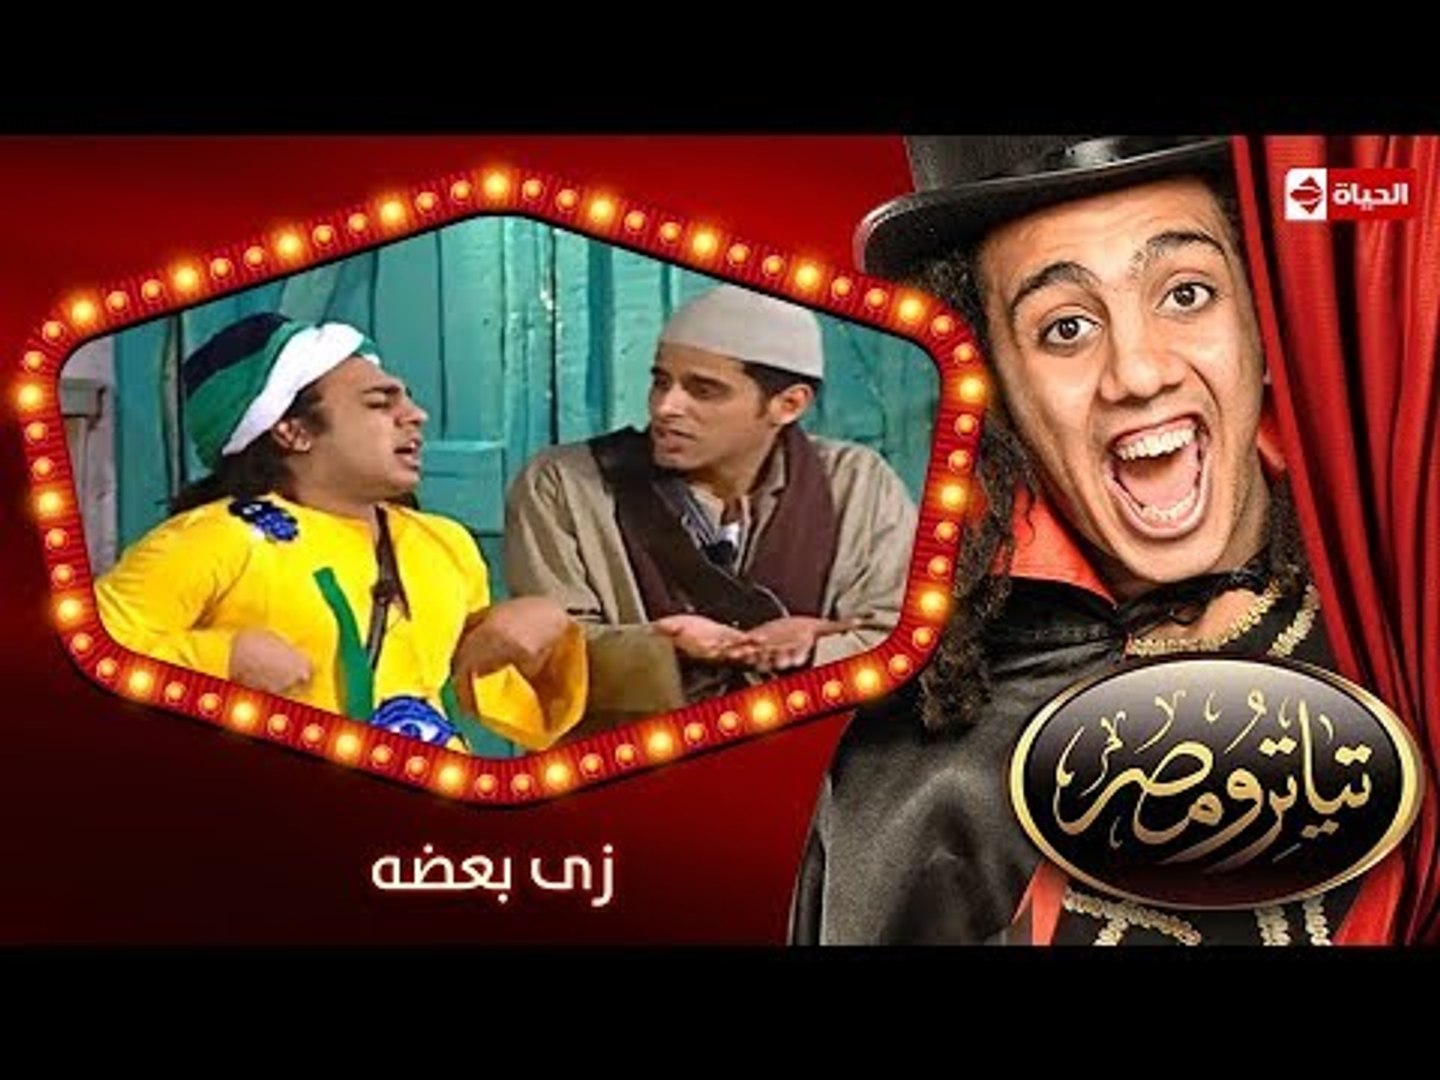 تياترو مصر | الموسم الثانى | الحلقة 9 التاسعة | زى بعضه |حمدي المرغني و أوس  أوس | Teatro Masr - video Dailymotion